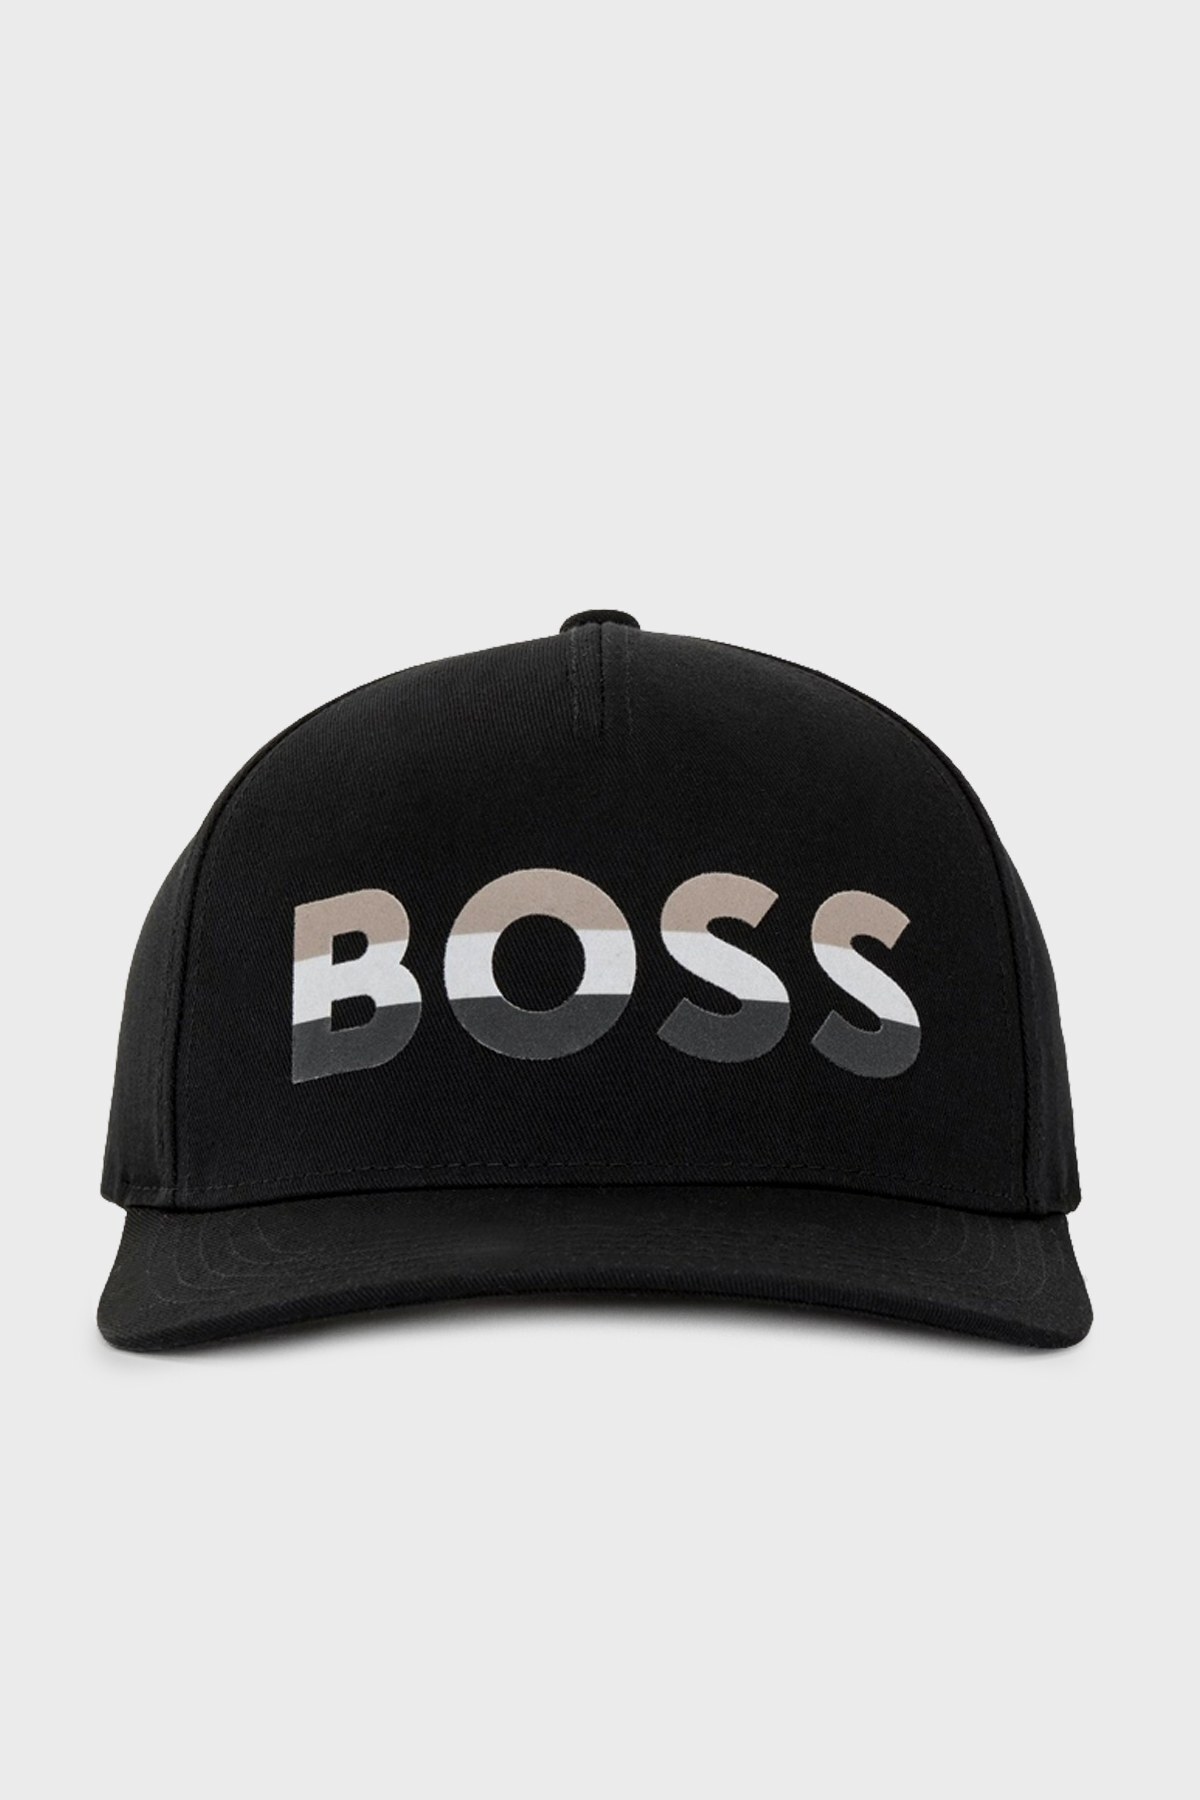 Boss Logo Baskılı % 100 Pamuk Erkek Şapka 50466236 001 SİYAH